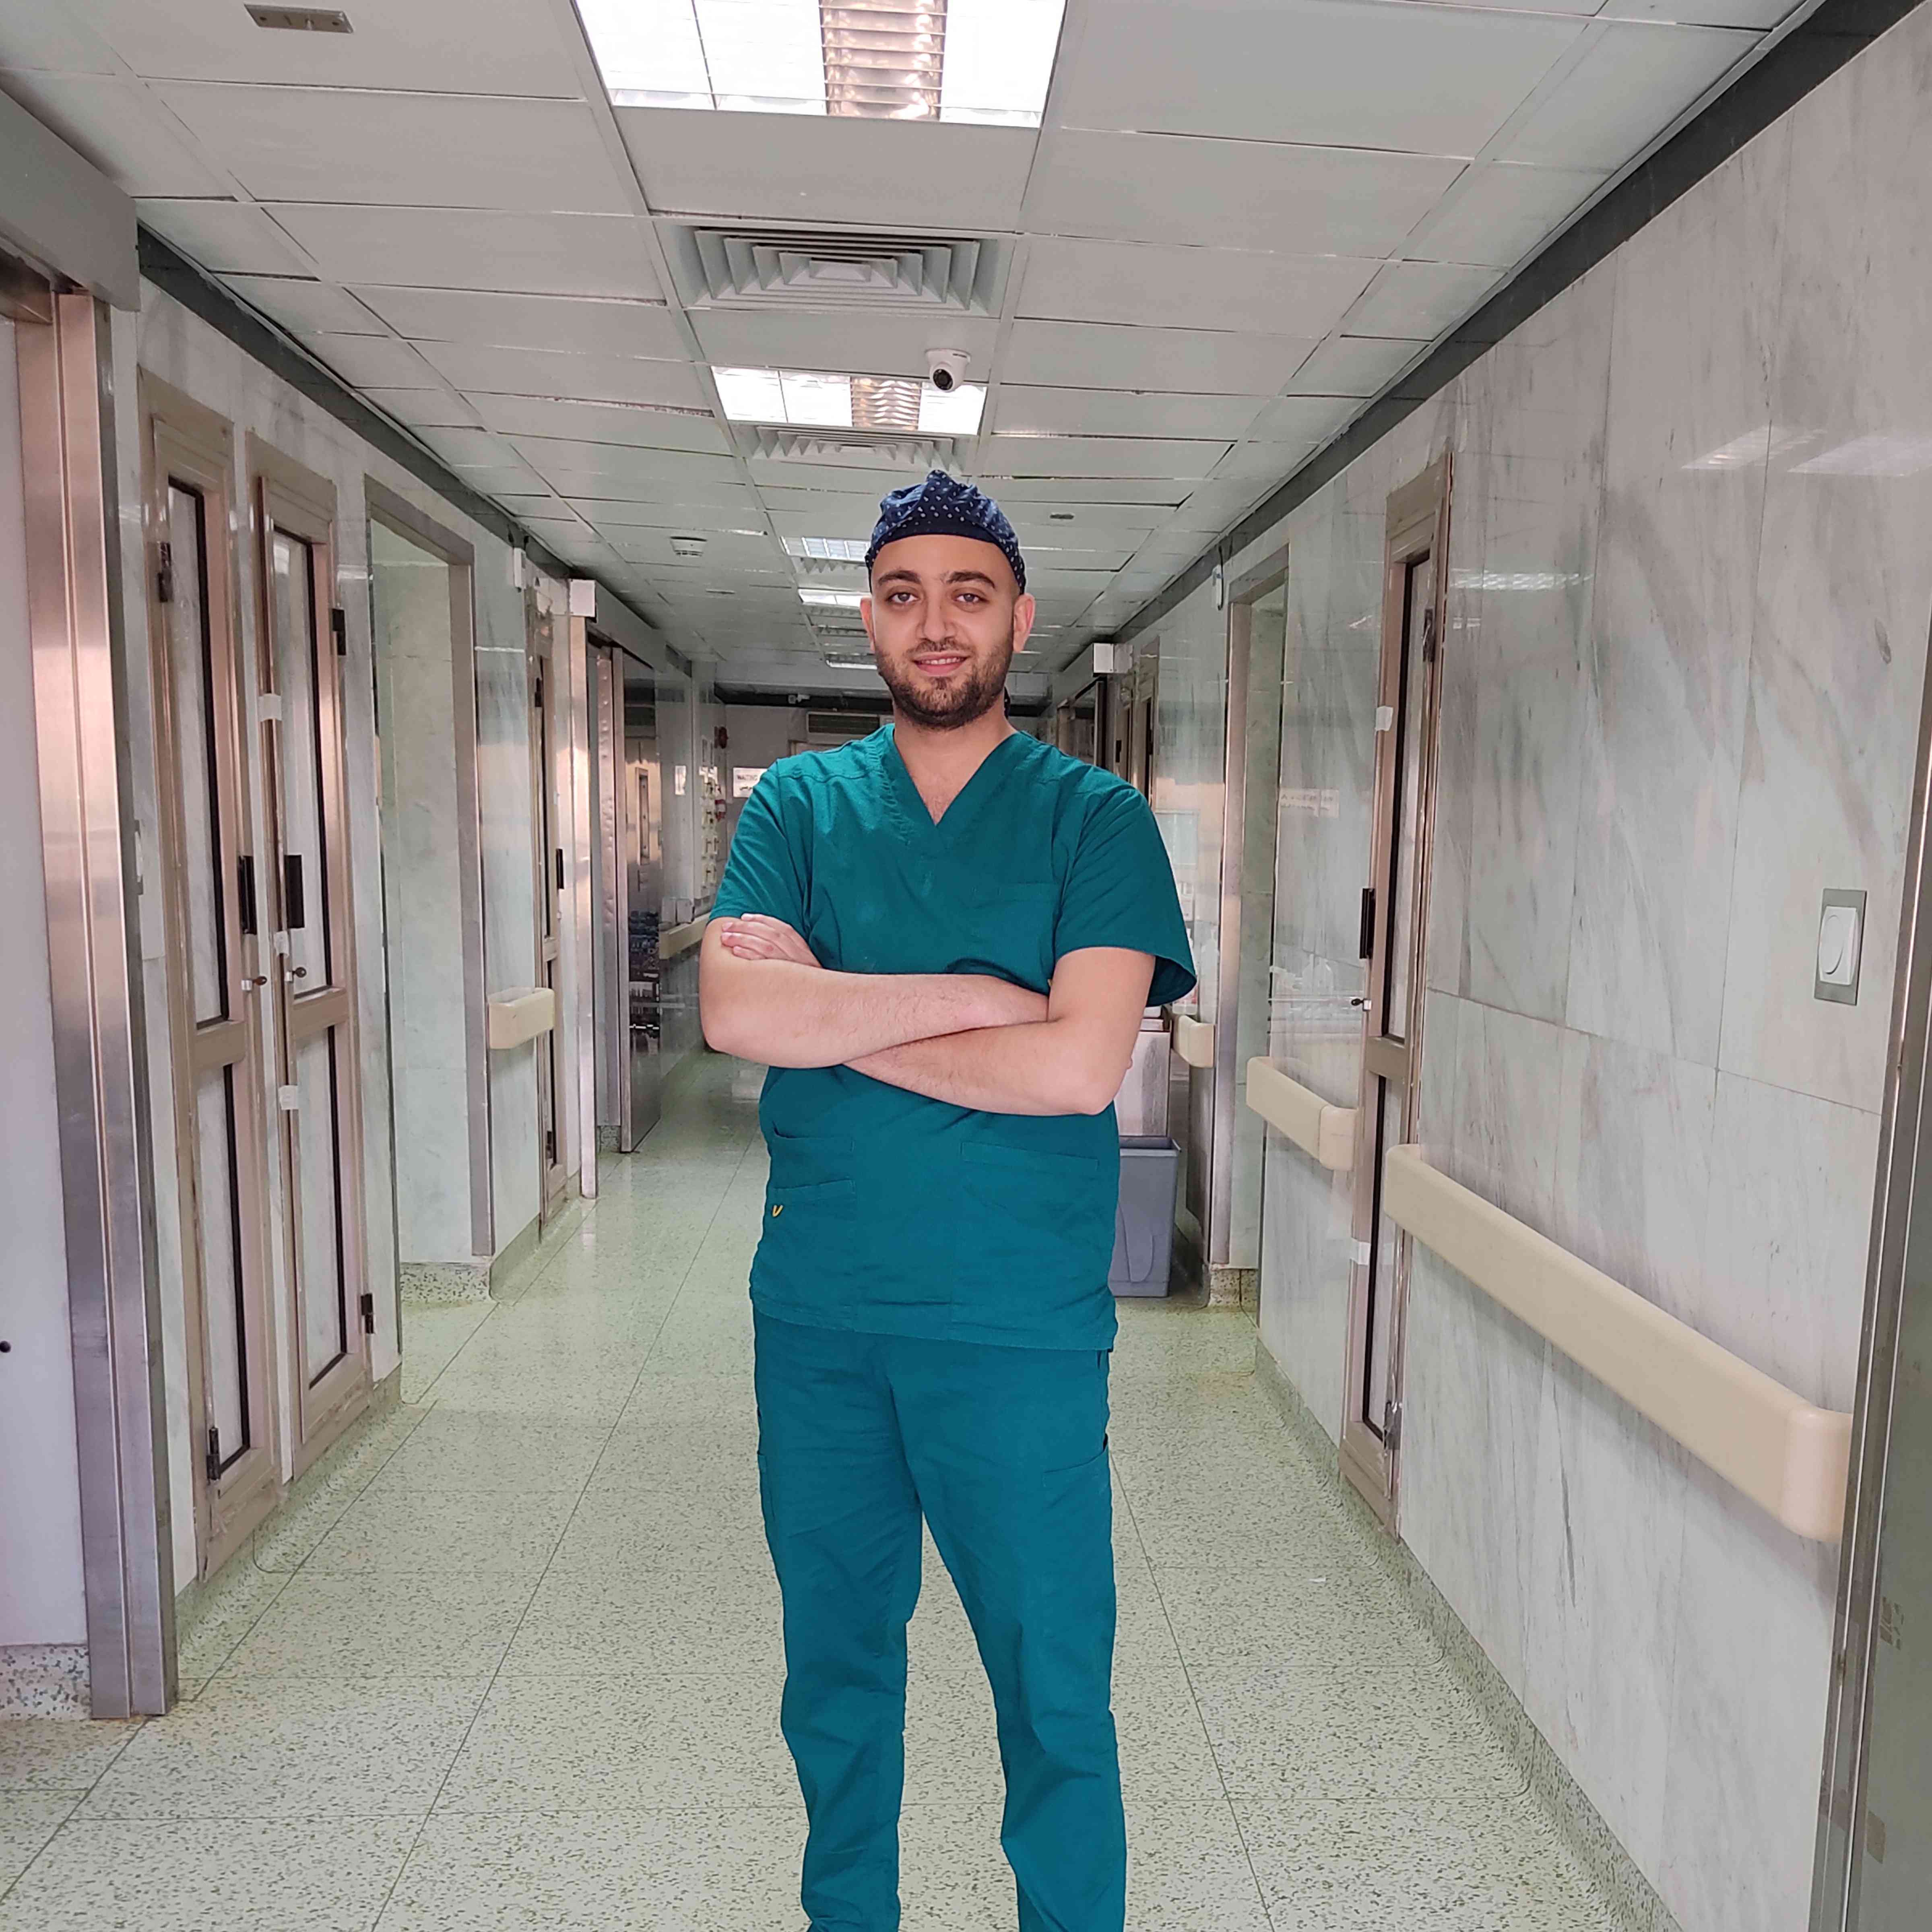 دكتور خالد البوشي